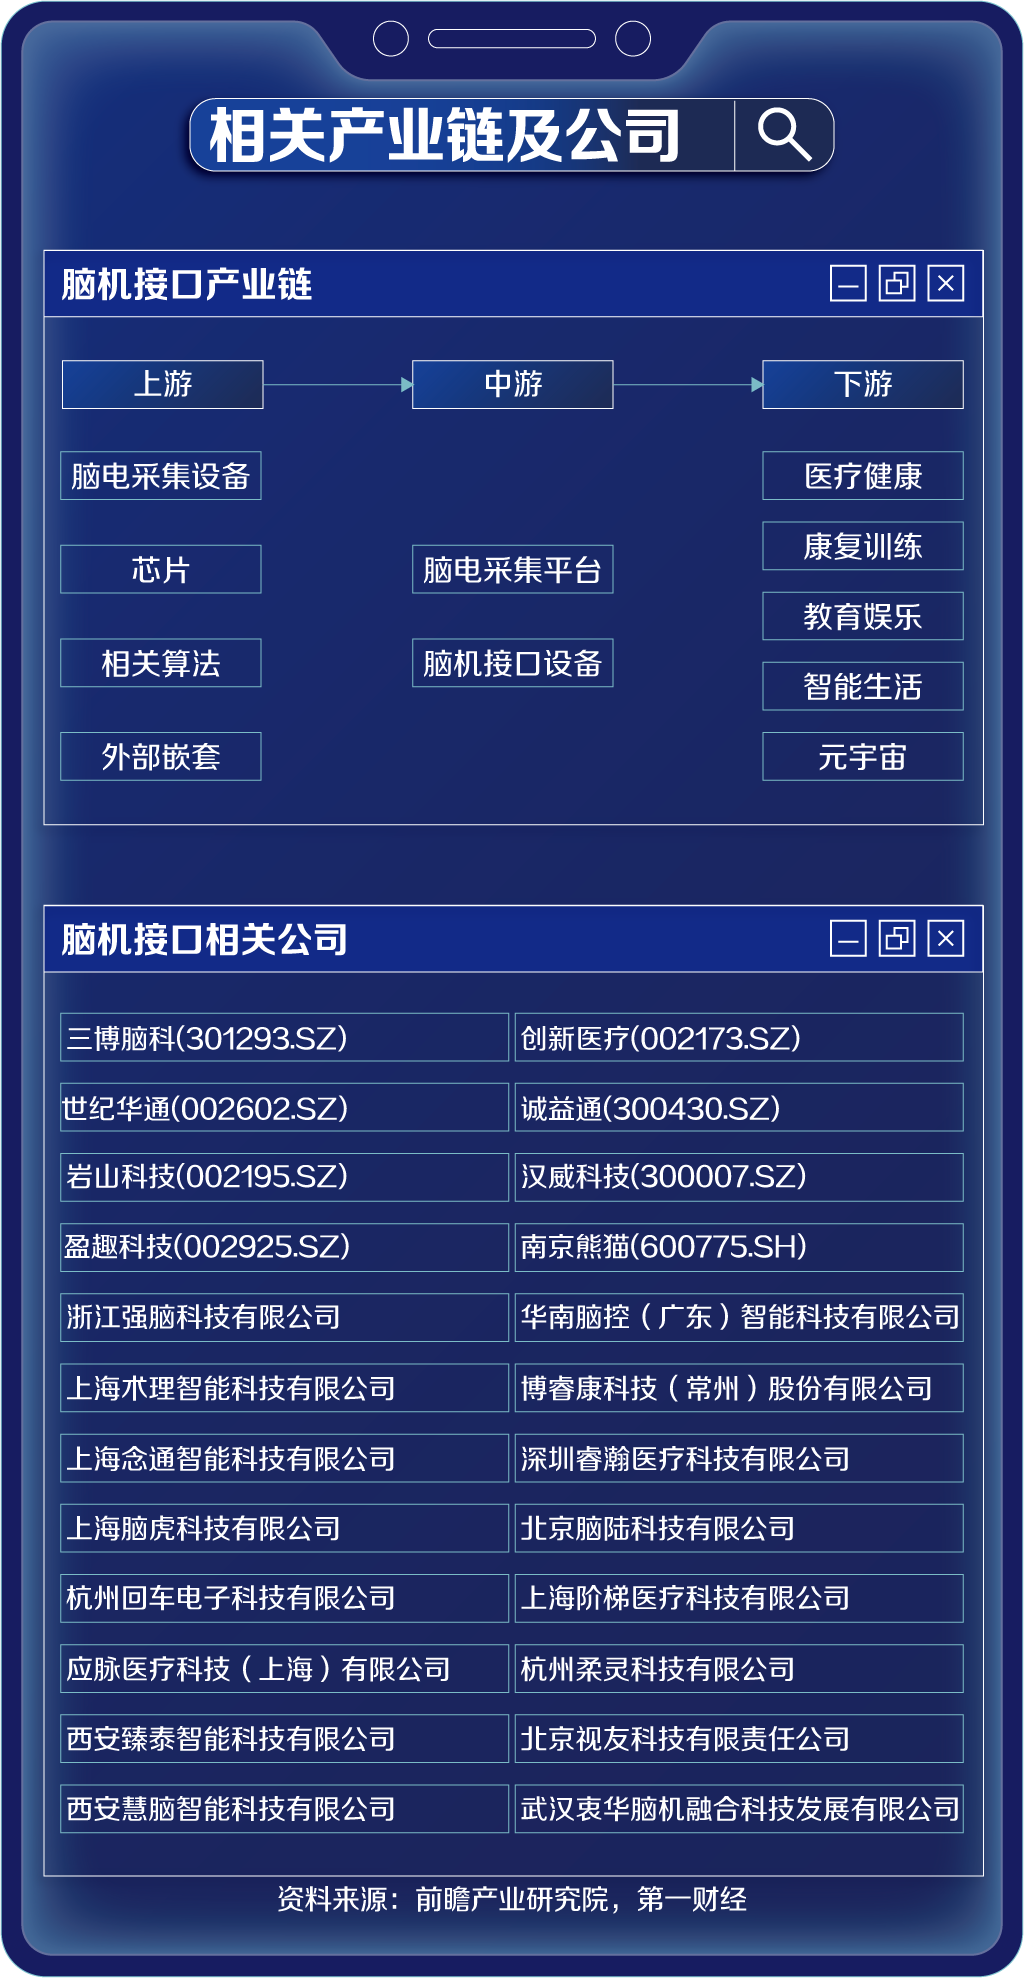 传奇登录器列表详解_爱上传奇登陆器_传奇登陆器下载完整版